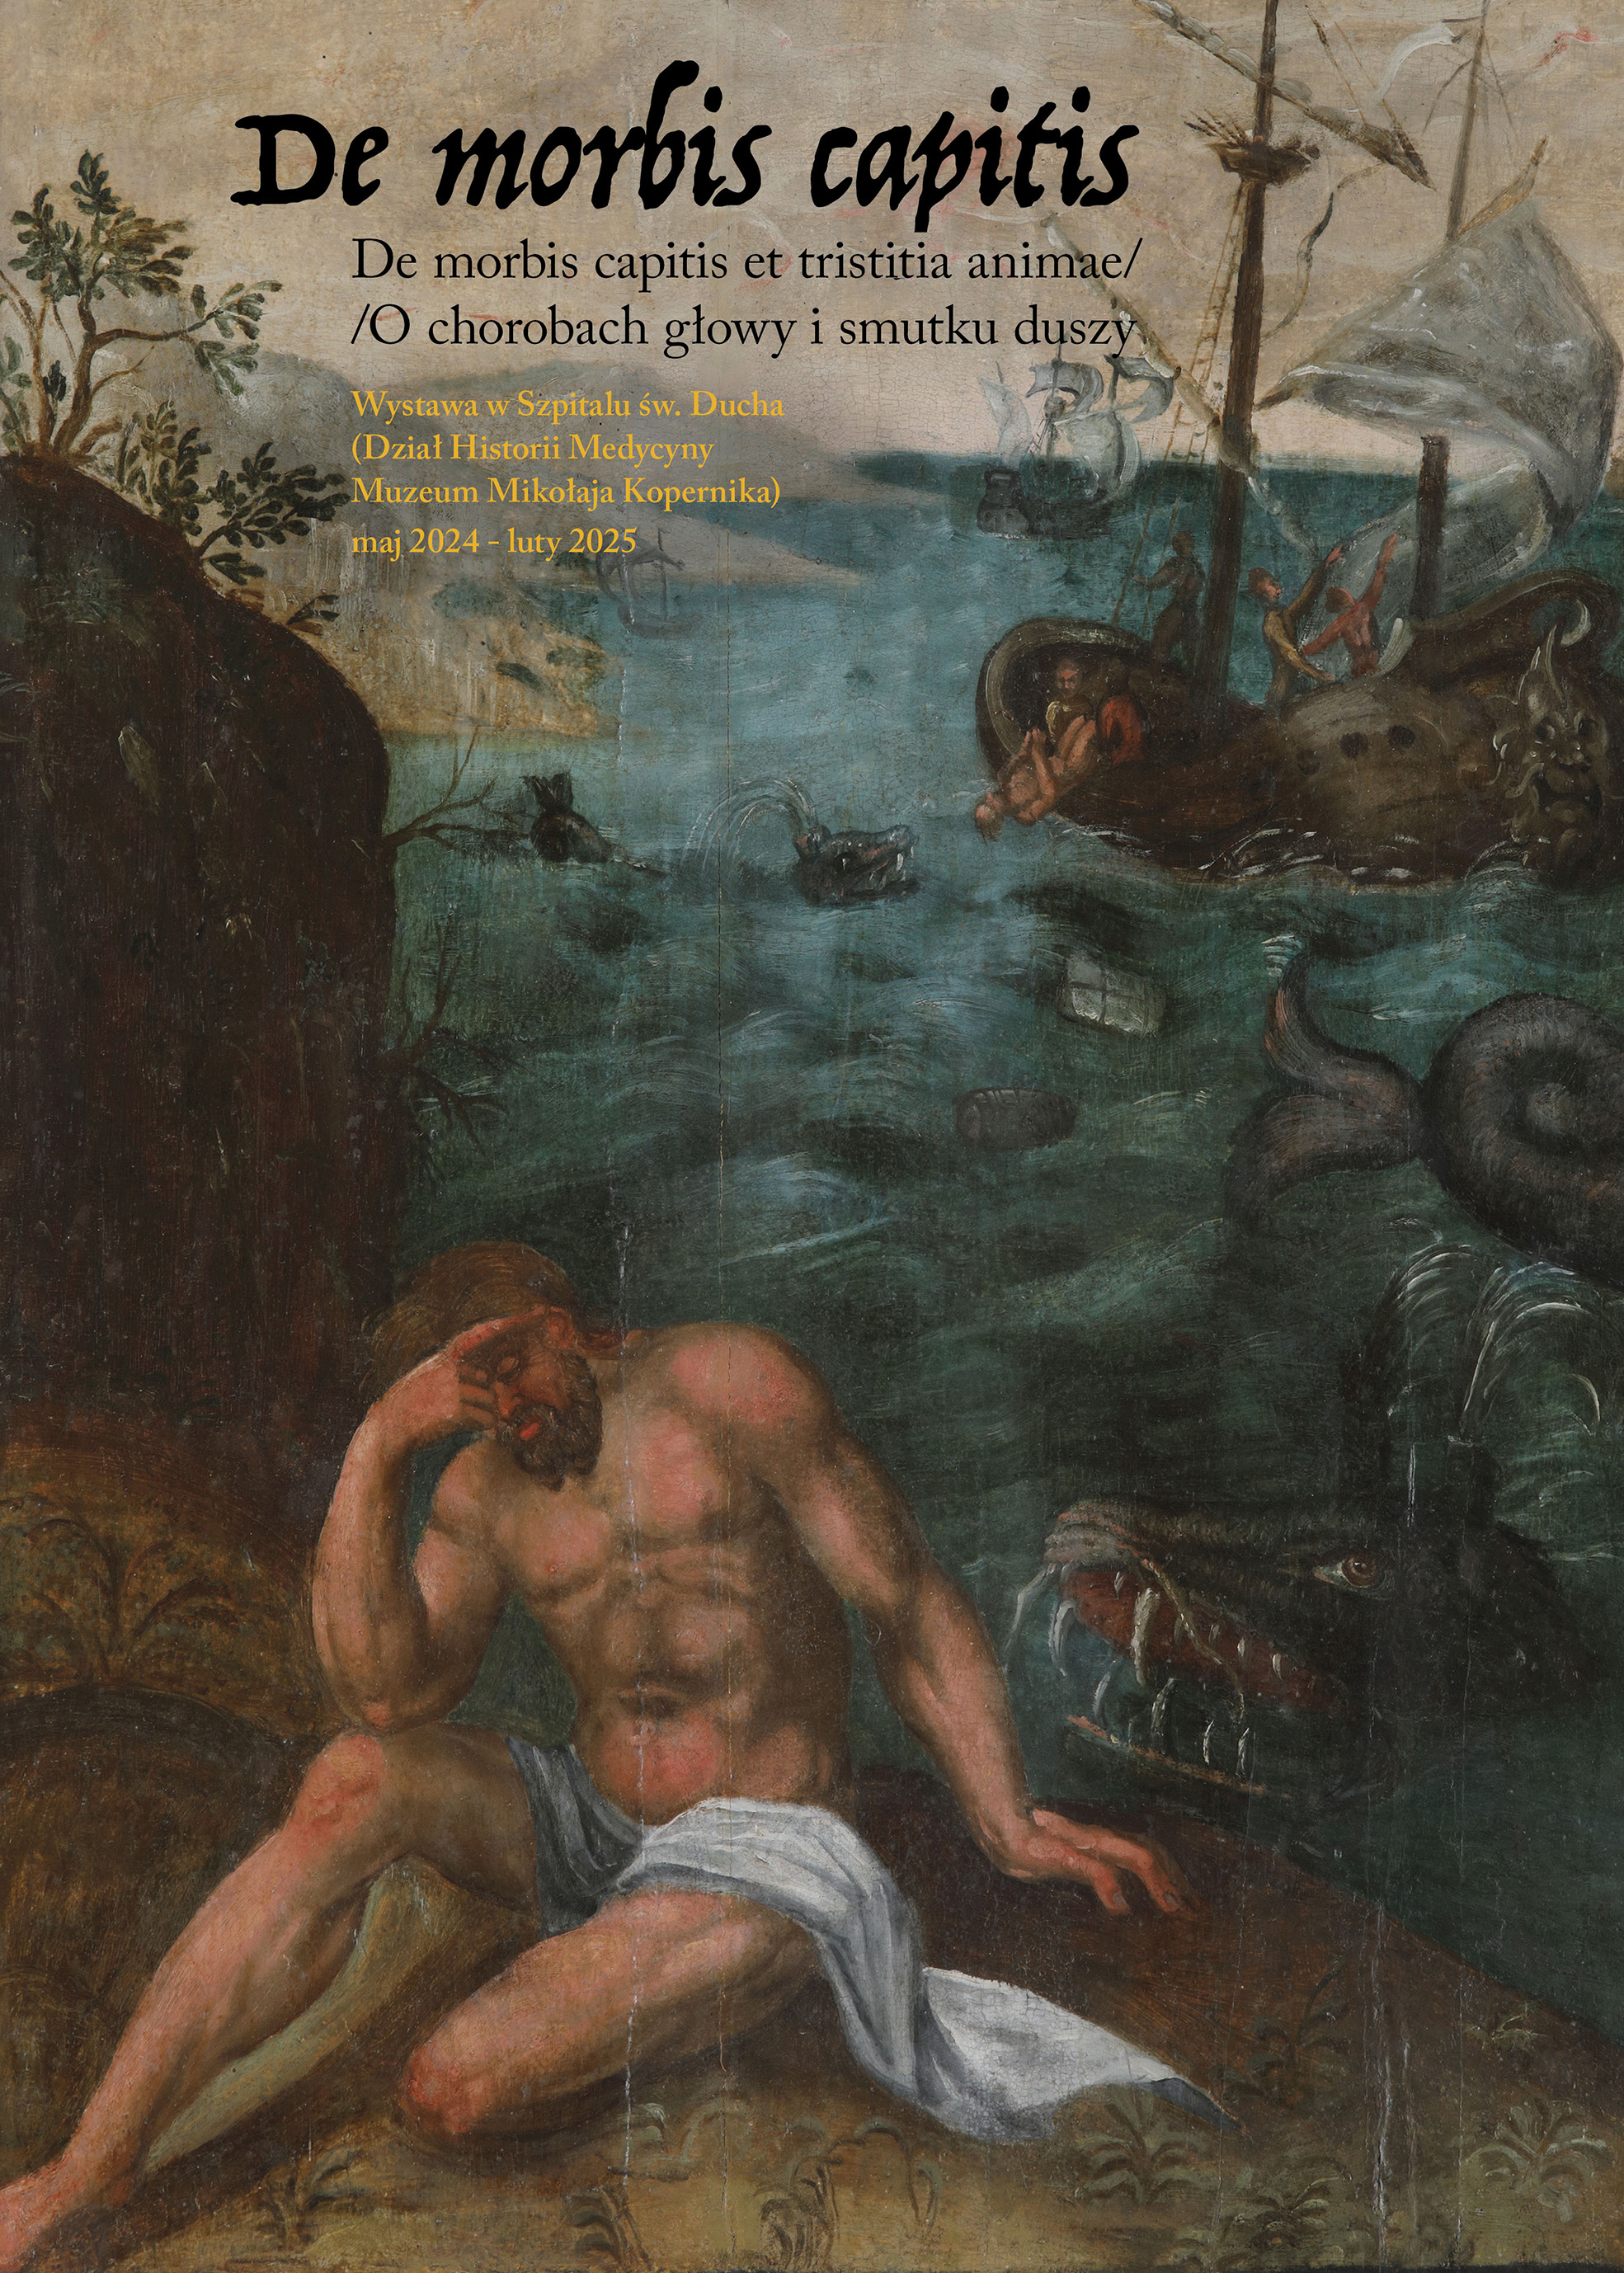 De morbis capitis et tristitia animae / O chorobach głowy i smutku duszy Dział Historii Medycyny (Szpital św. Ducha), wystawa czasowa